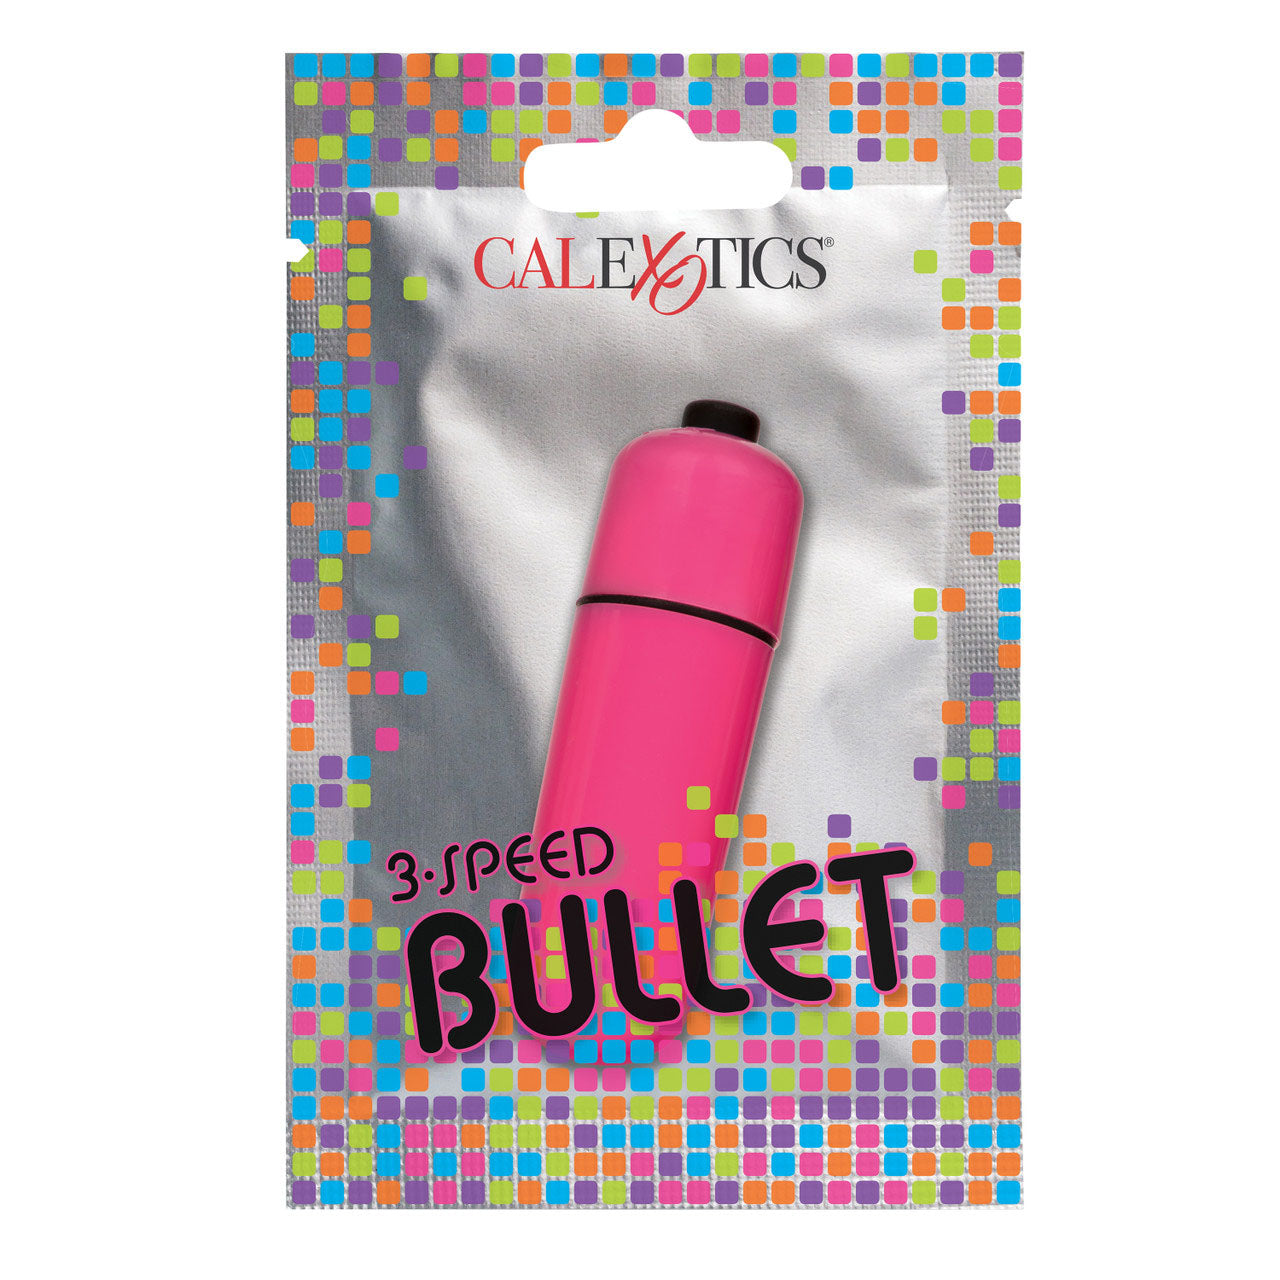 Foil Pack 3-Speed Bullet Vibrator - Pink